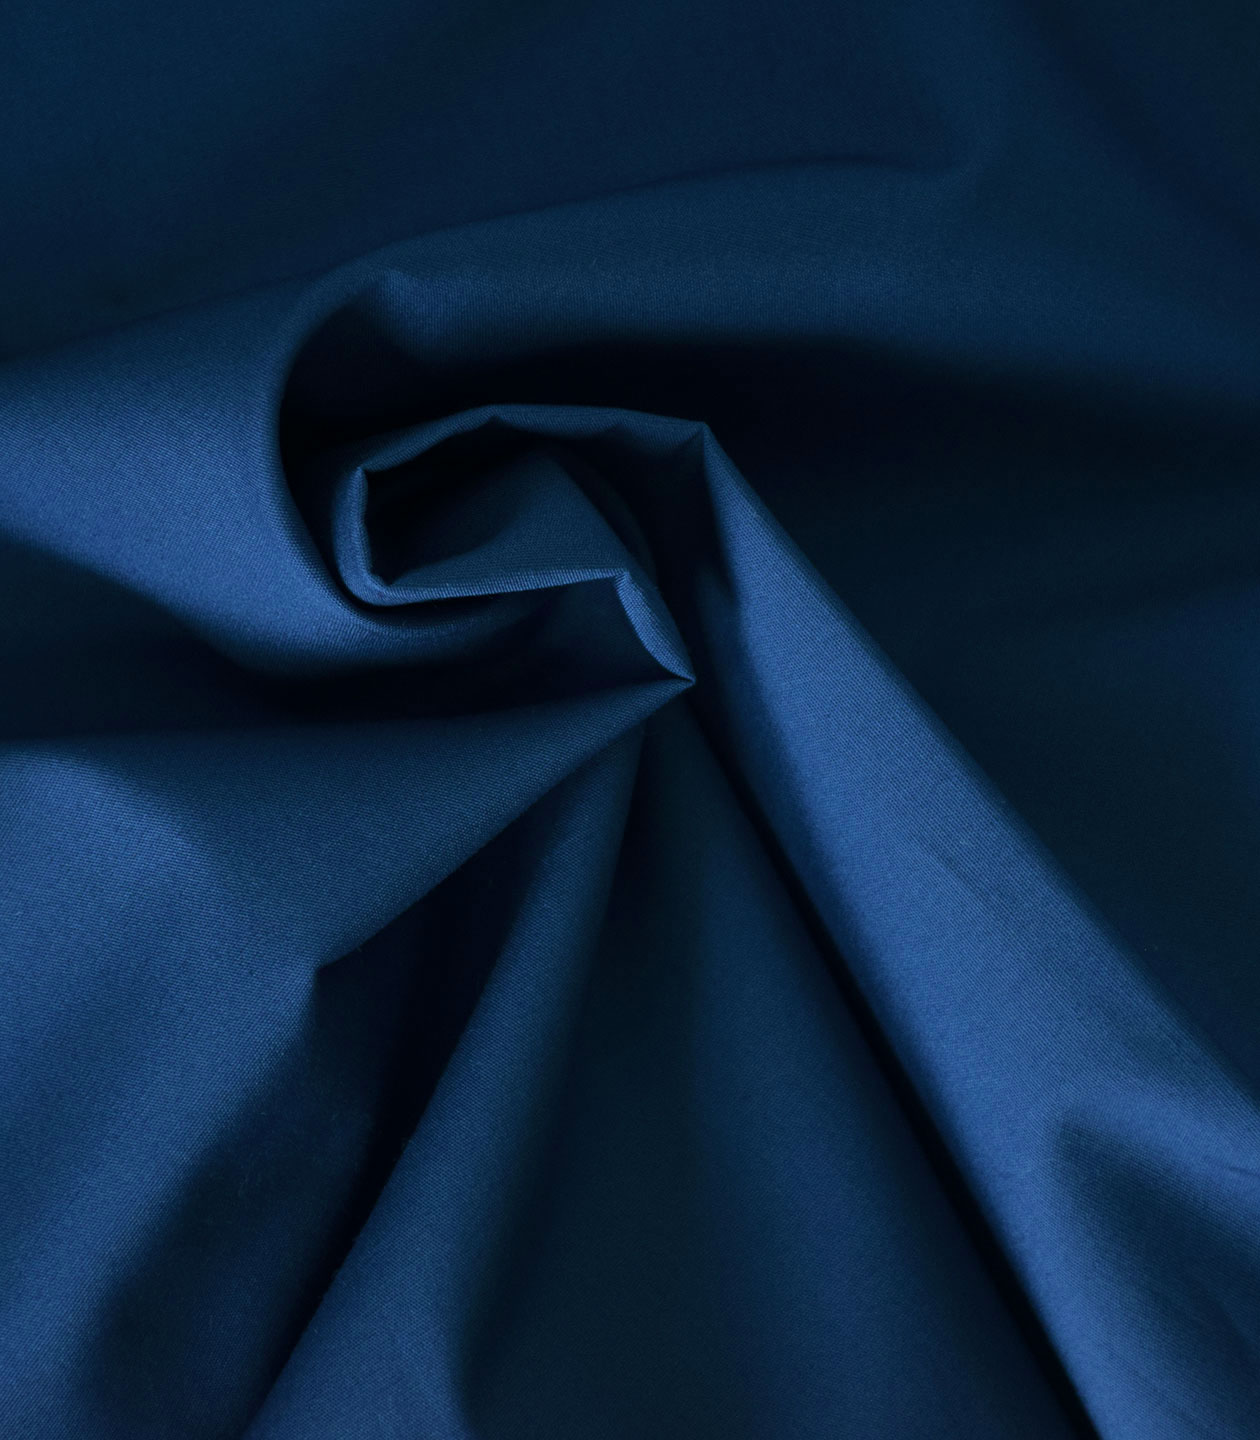 Tissu Popeline Coton Nuage - Bleu ciel - popeline au Mètre